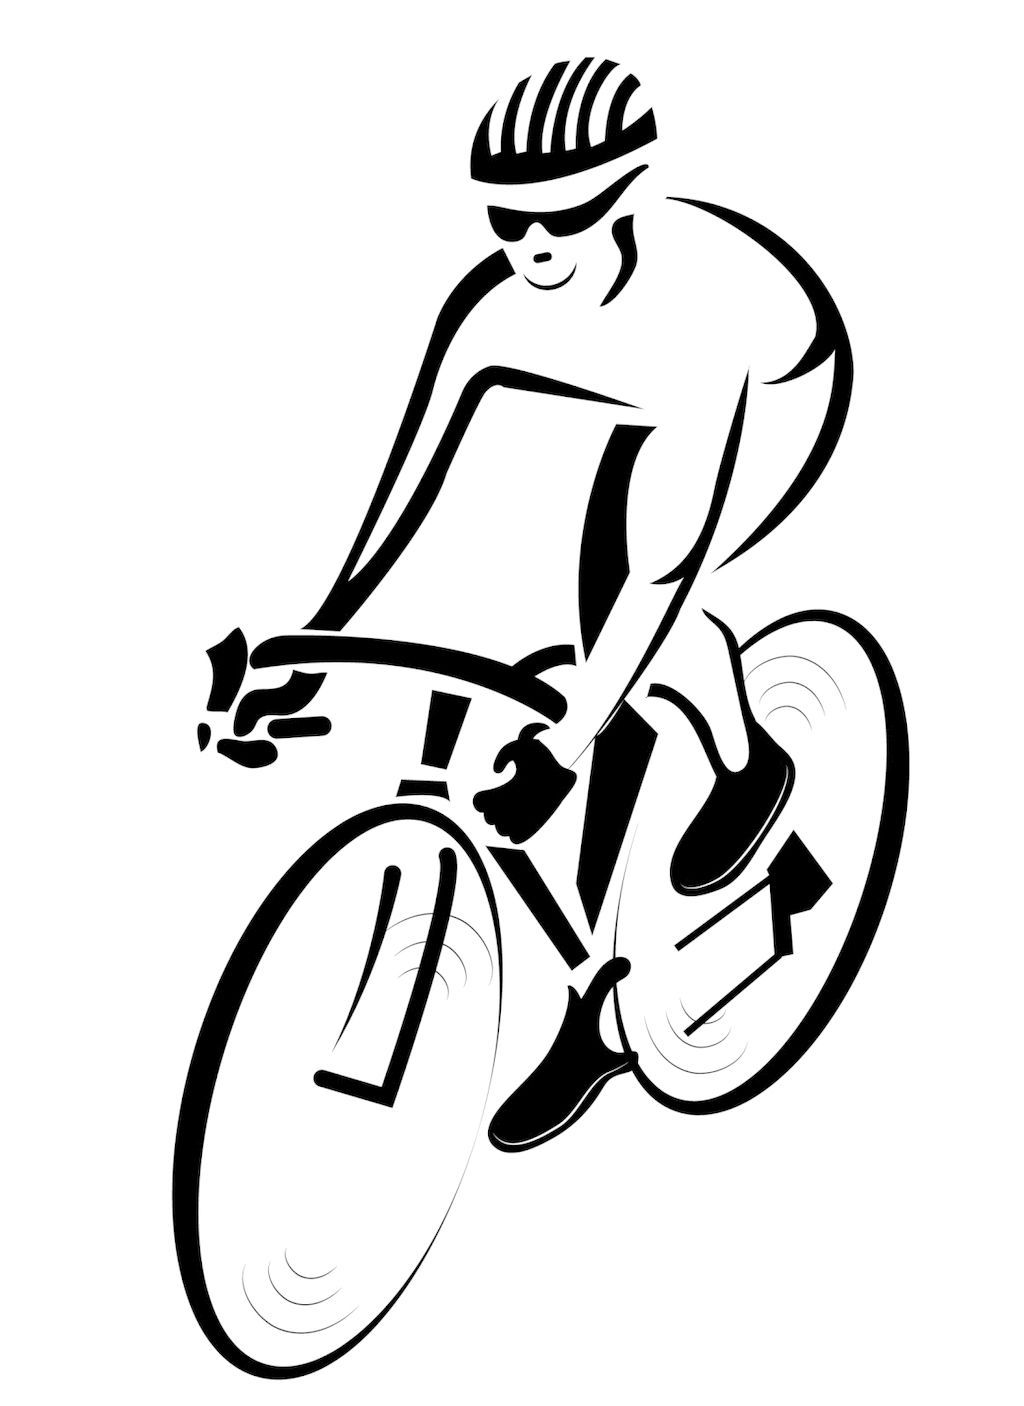 山地自行车运动简笔画图片